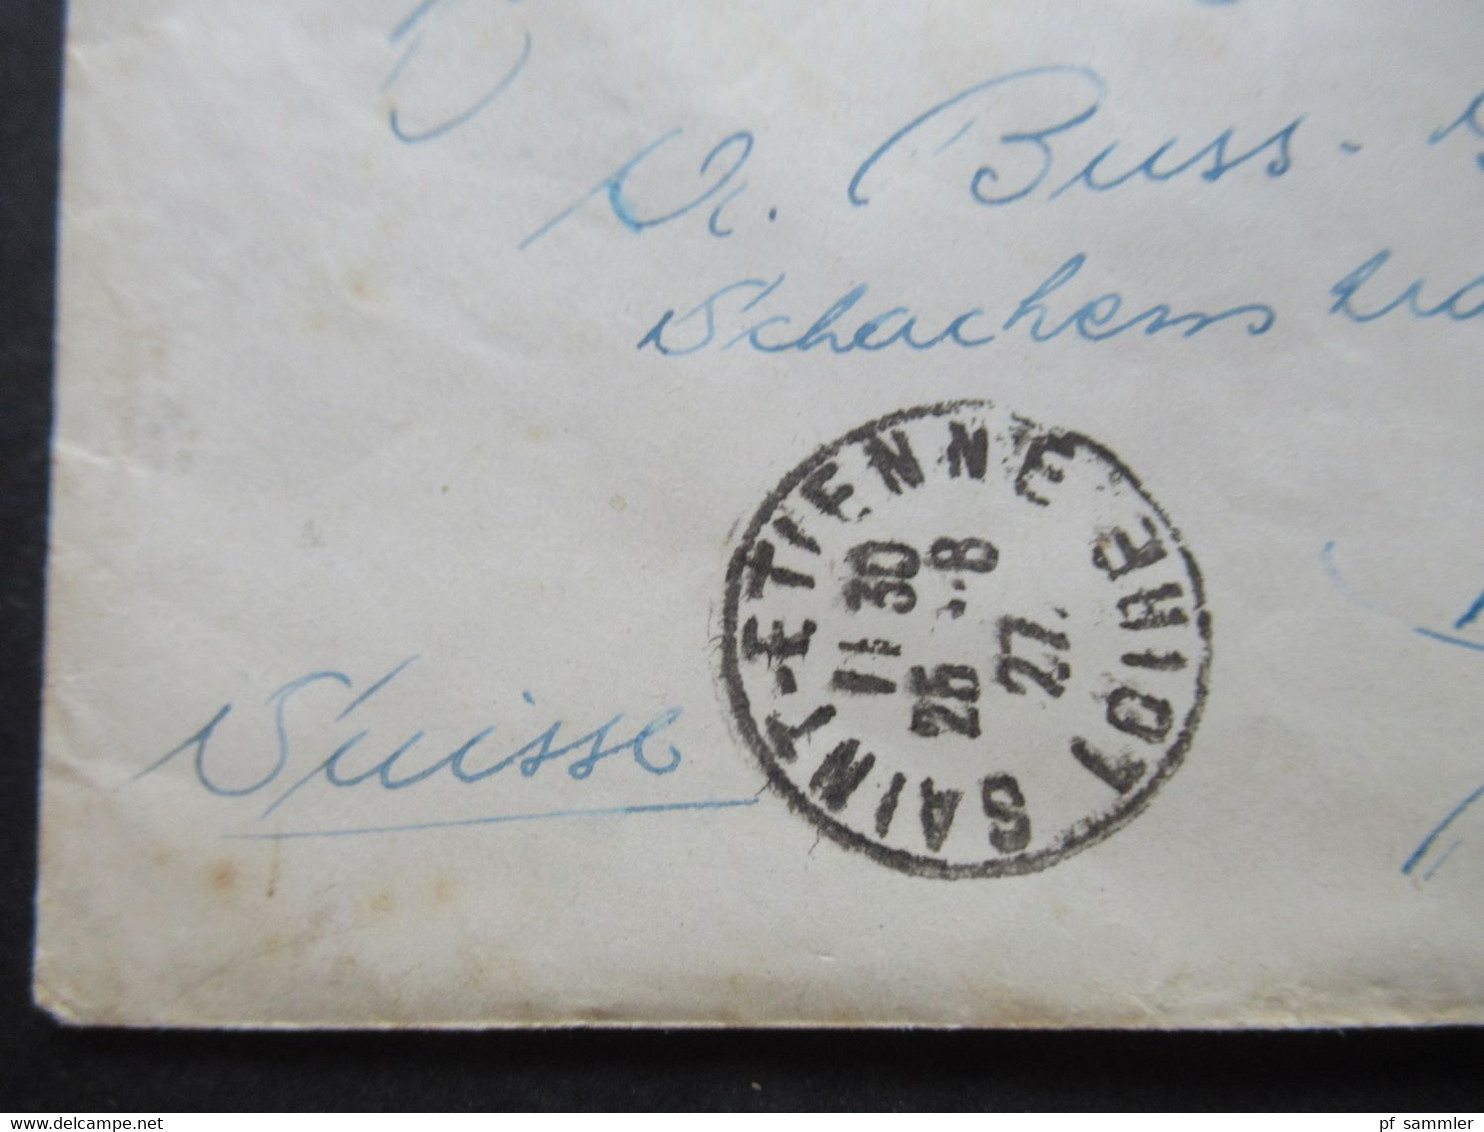 Frankreich 1927 Einschreiben / Recommande OHNE R-Zettel Auslandsbrief Saint Etienne Nach Kriens Schweiz - Covers & Documents